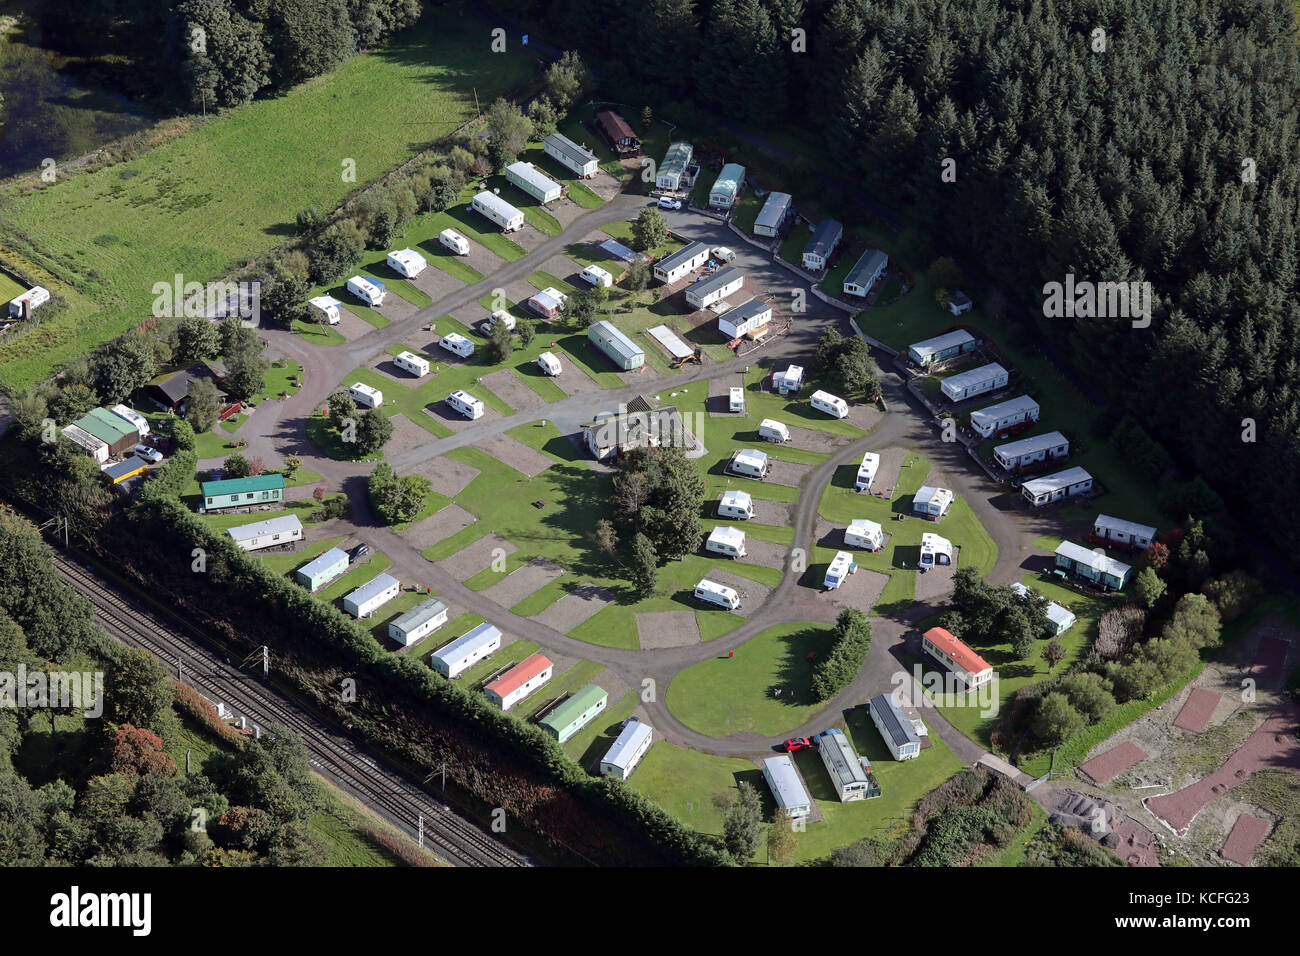 aerial view of Mount View Caravan Park, Abington, South West Scotland, UK Stock Photo